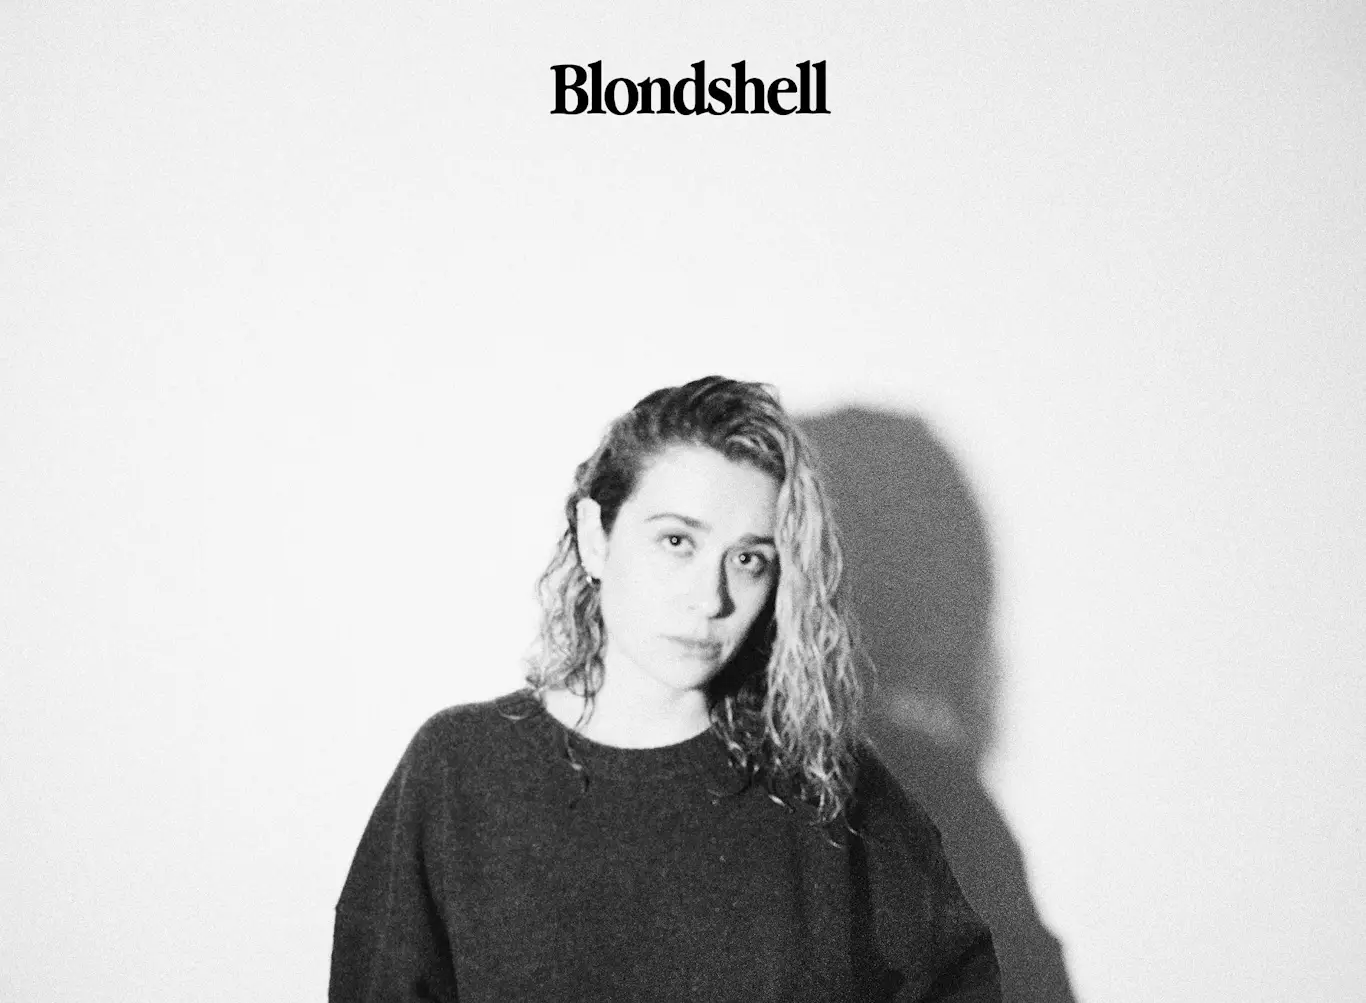 ALBUM REVIEW: Blondshell – Blondshell 